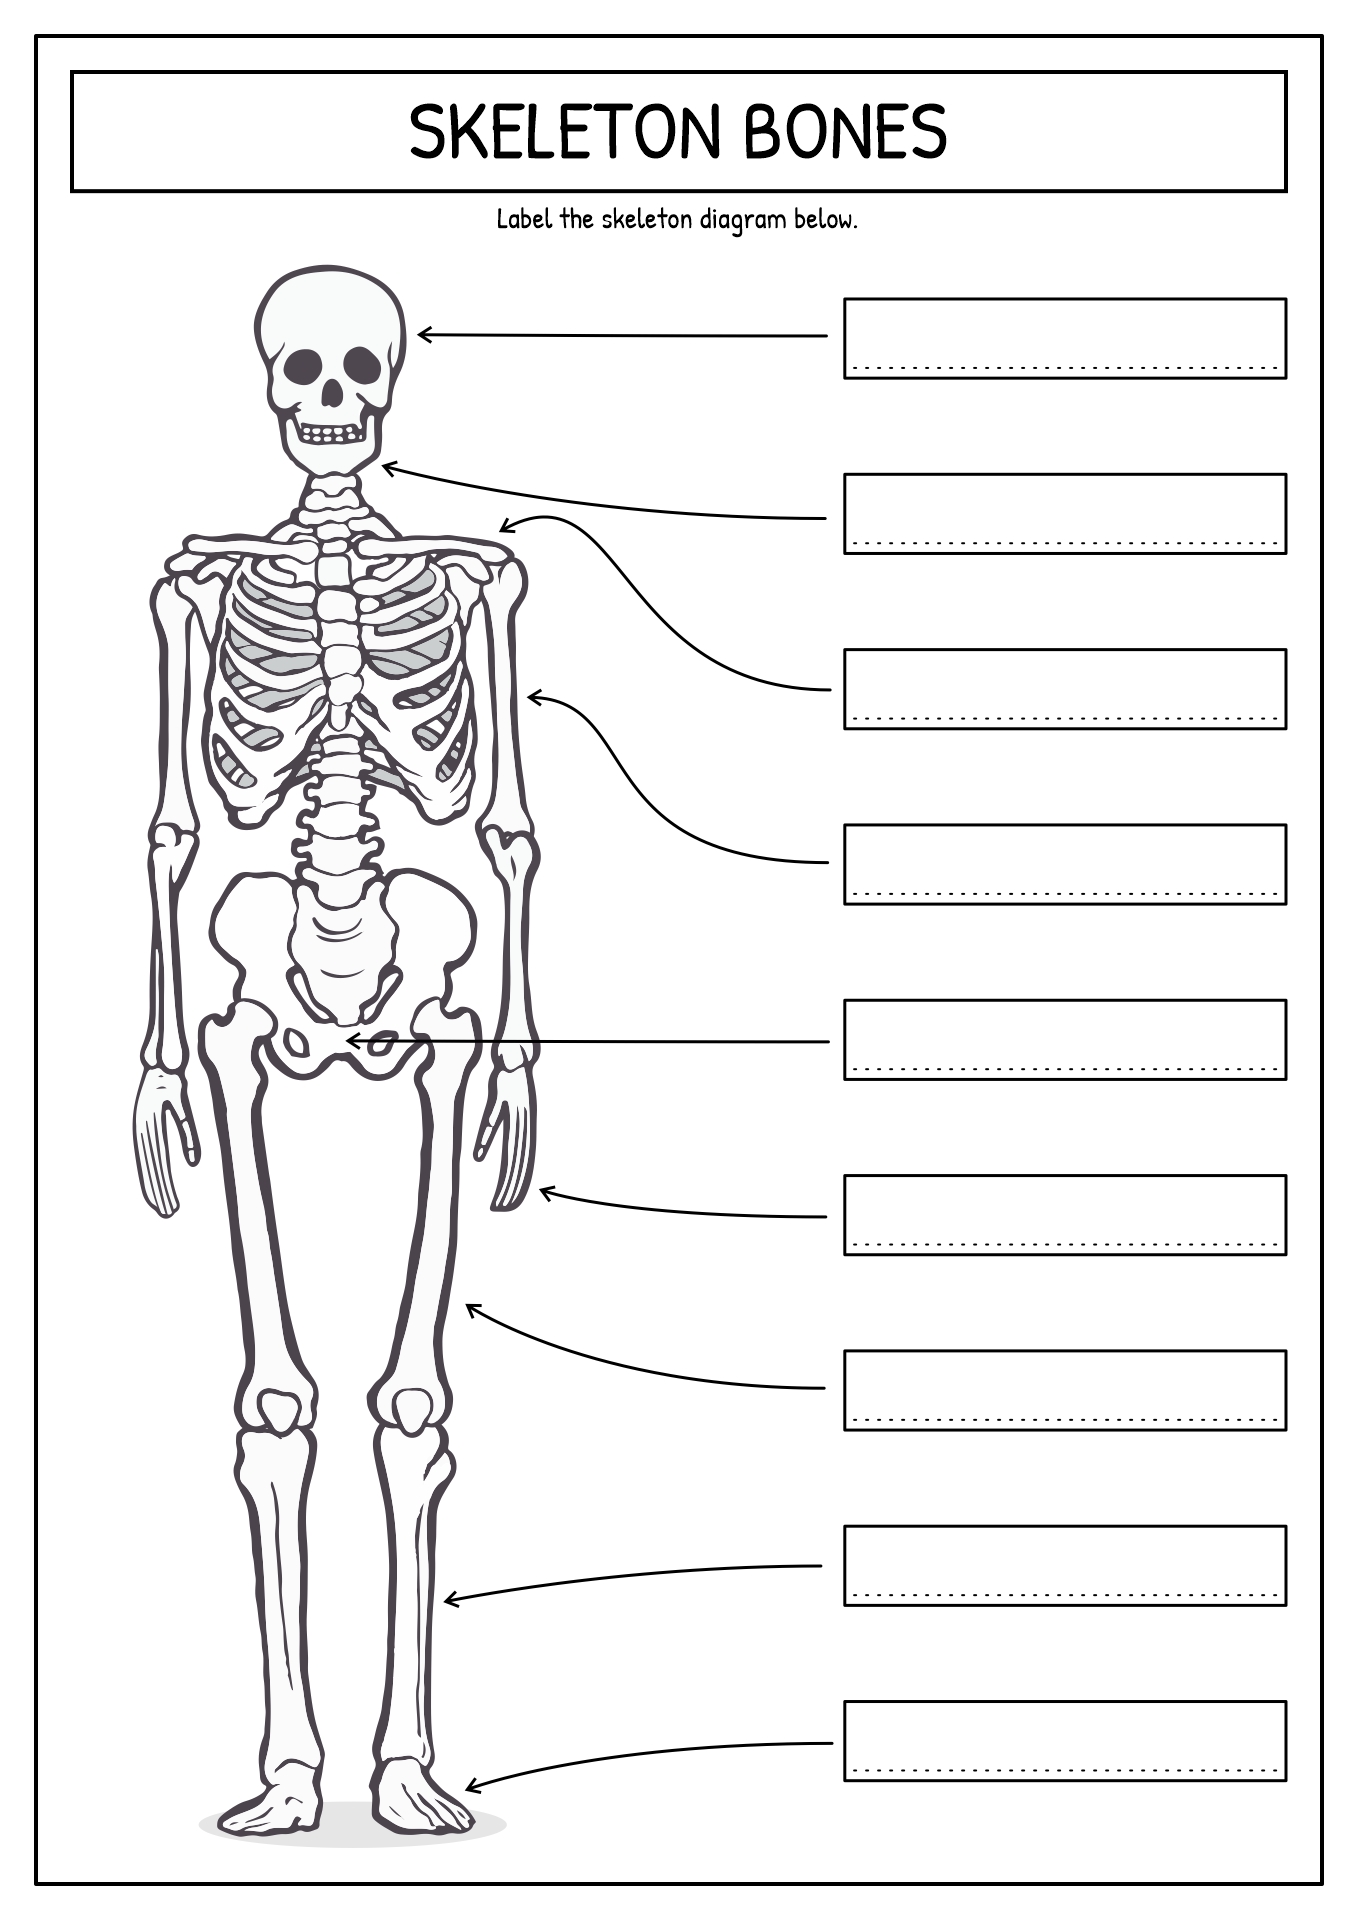 Skeleton Bones Worksheet